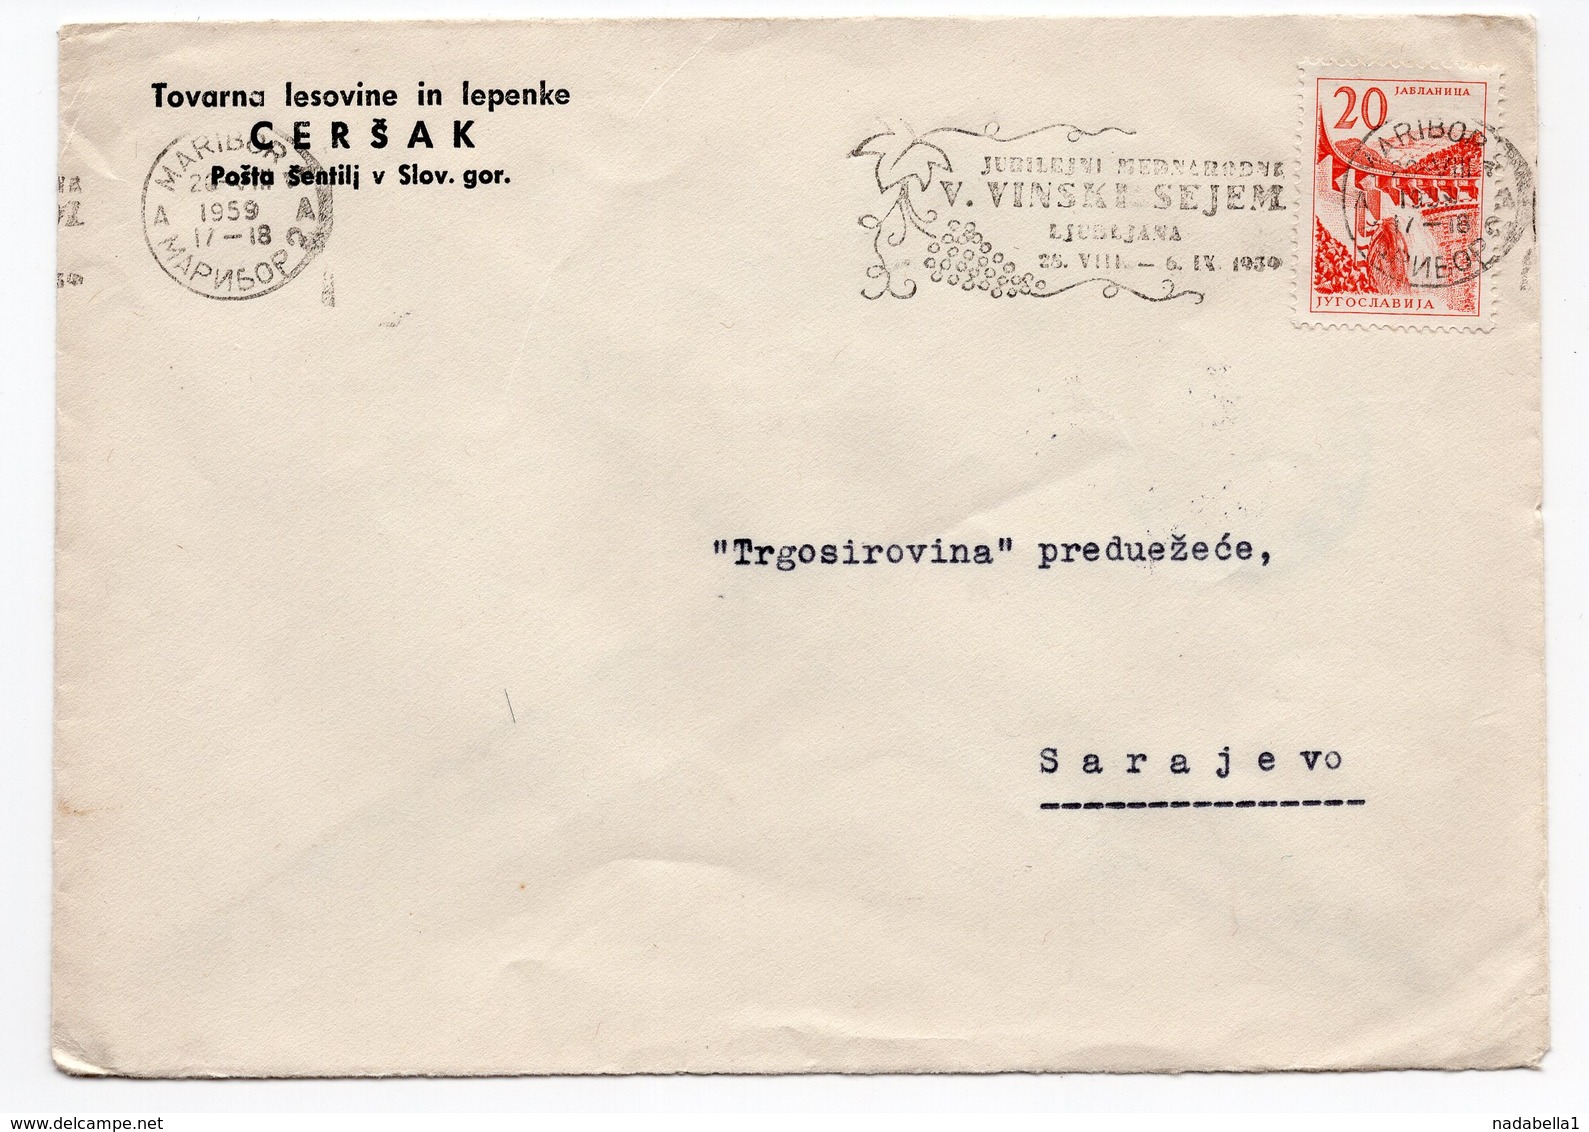 1959 YUGOSLAVIA, SLOVENIA, MARIBOR TO SARAJEVO, CERŠAK, FLAM VINSKI SAJAM - Covers & Documents